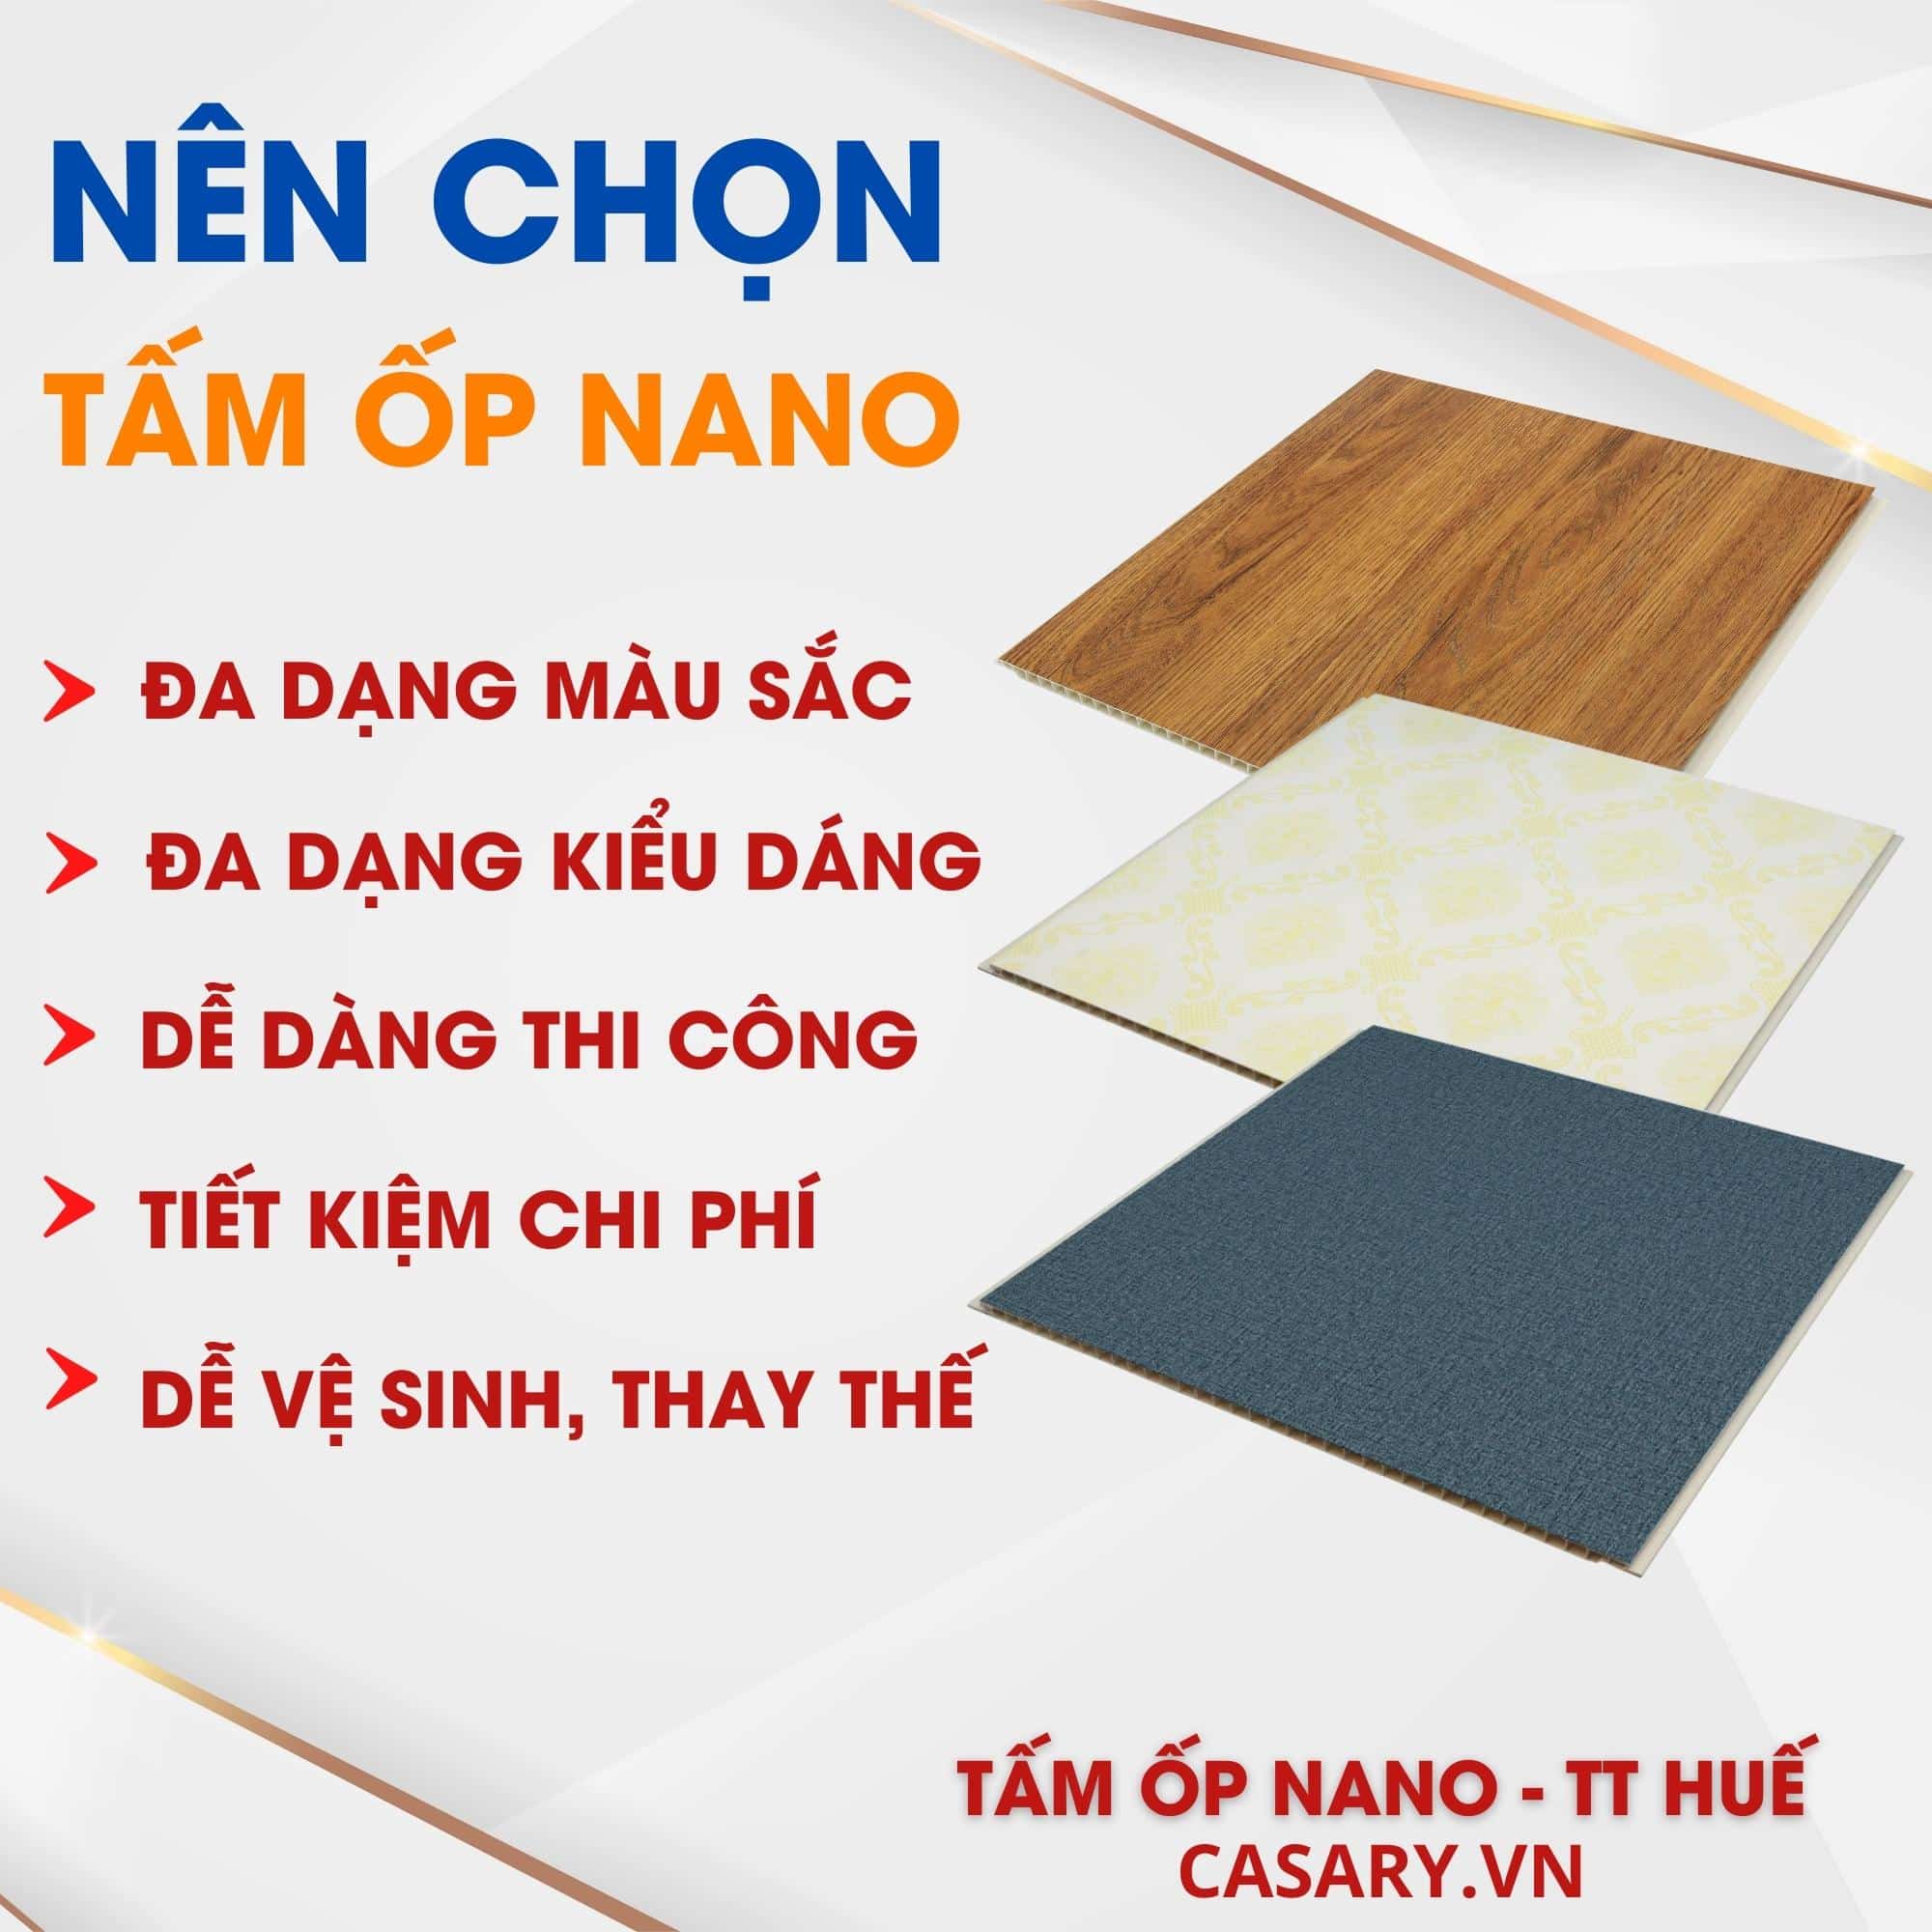 Lý do nên chọn Tấm ốp Nano Thừa Thiên Huế